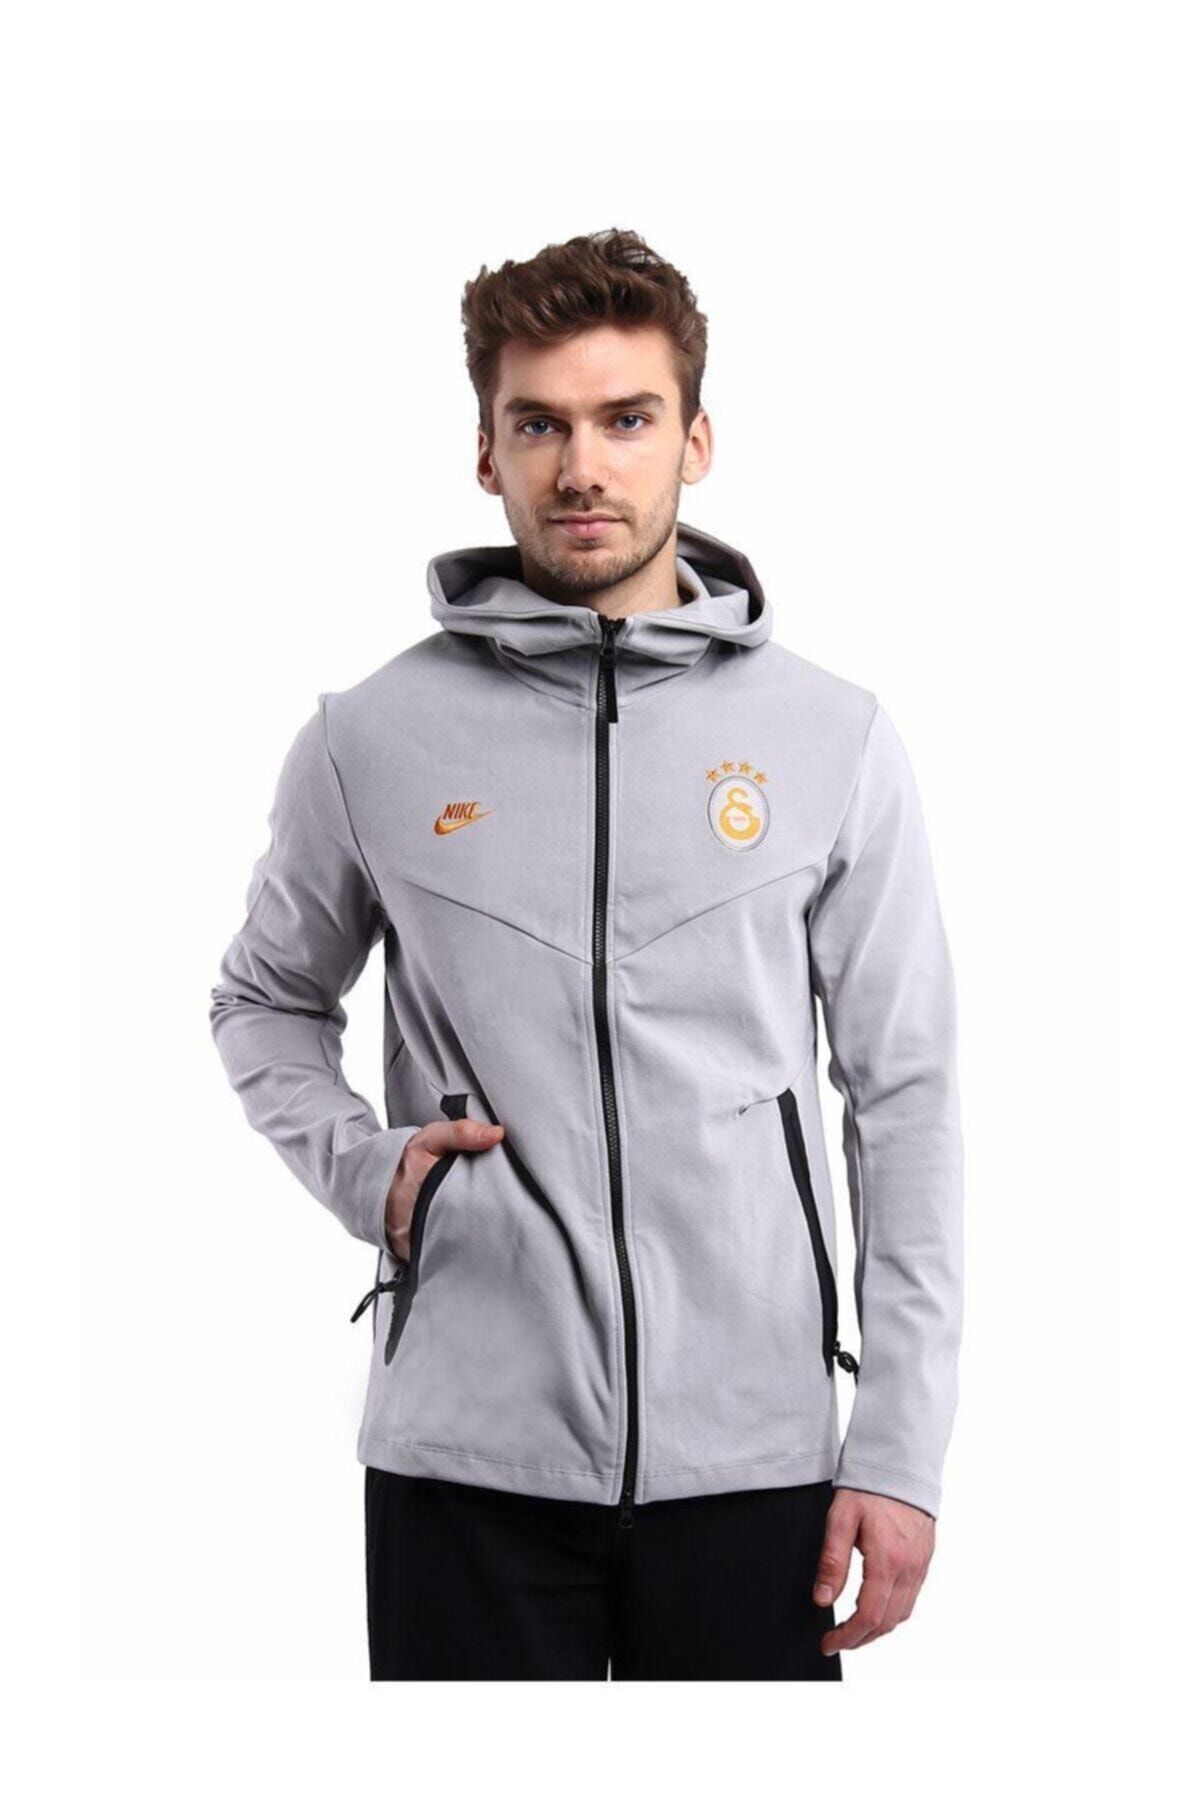 crisis Voldoen uitvegen Nike Erkek Gri Galatasaray Tech Pack Sweatshirt Cı2127-063 Fiyatı,  Yorumları - Trendyol